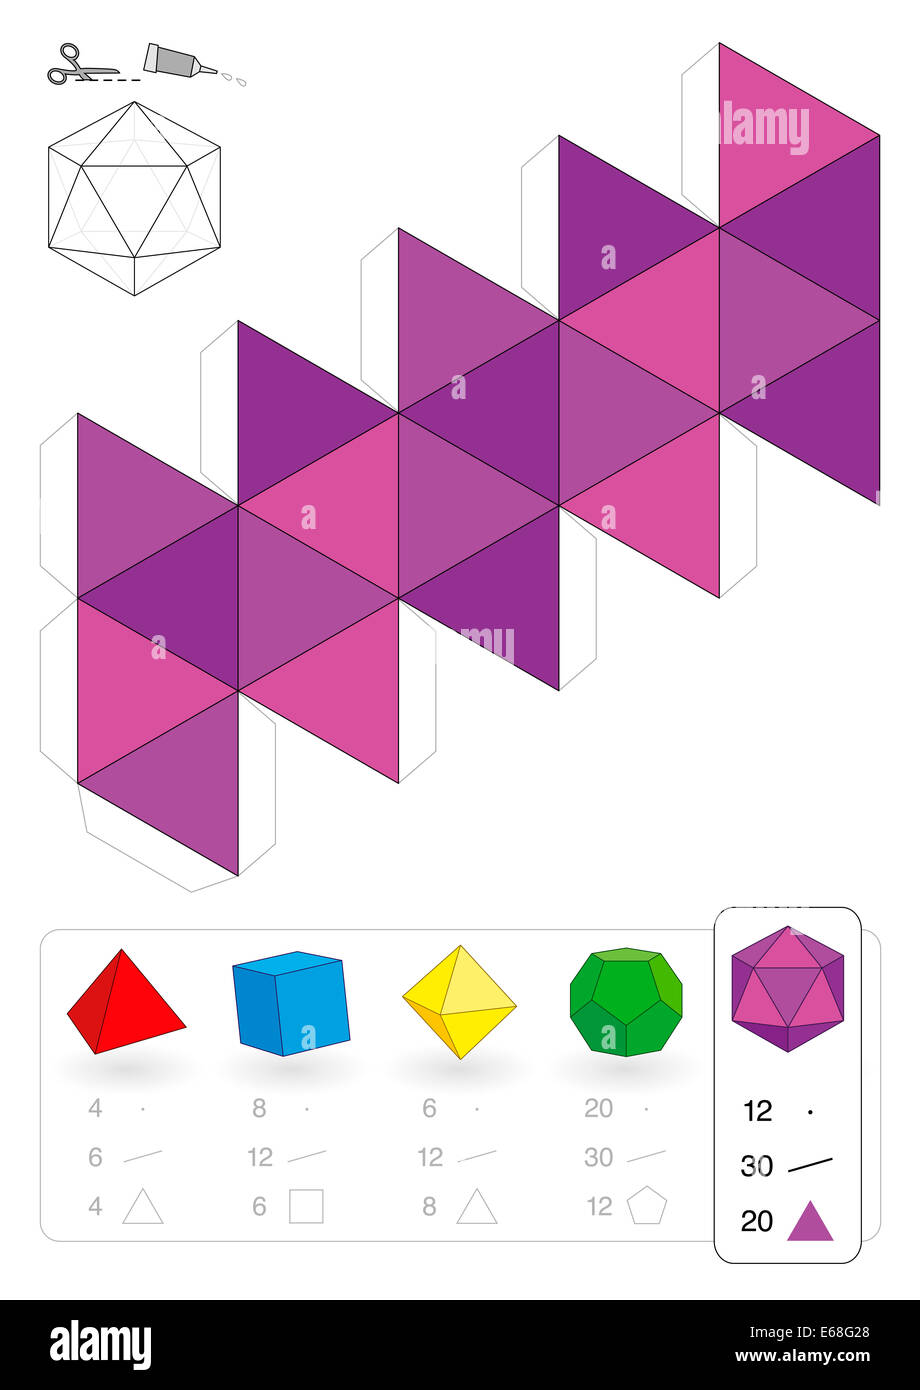 Modello di carta di un icosaedro, uno dei cinque solidi platonici, per rendere tridimensionale il lavoro artigianale fuori dei triangoli Foto Stock